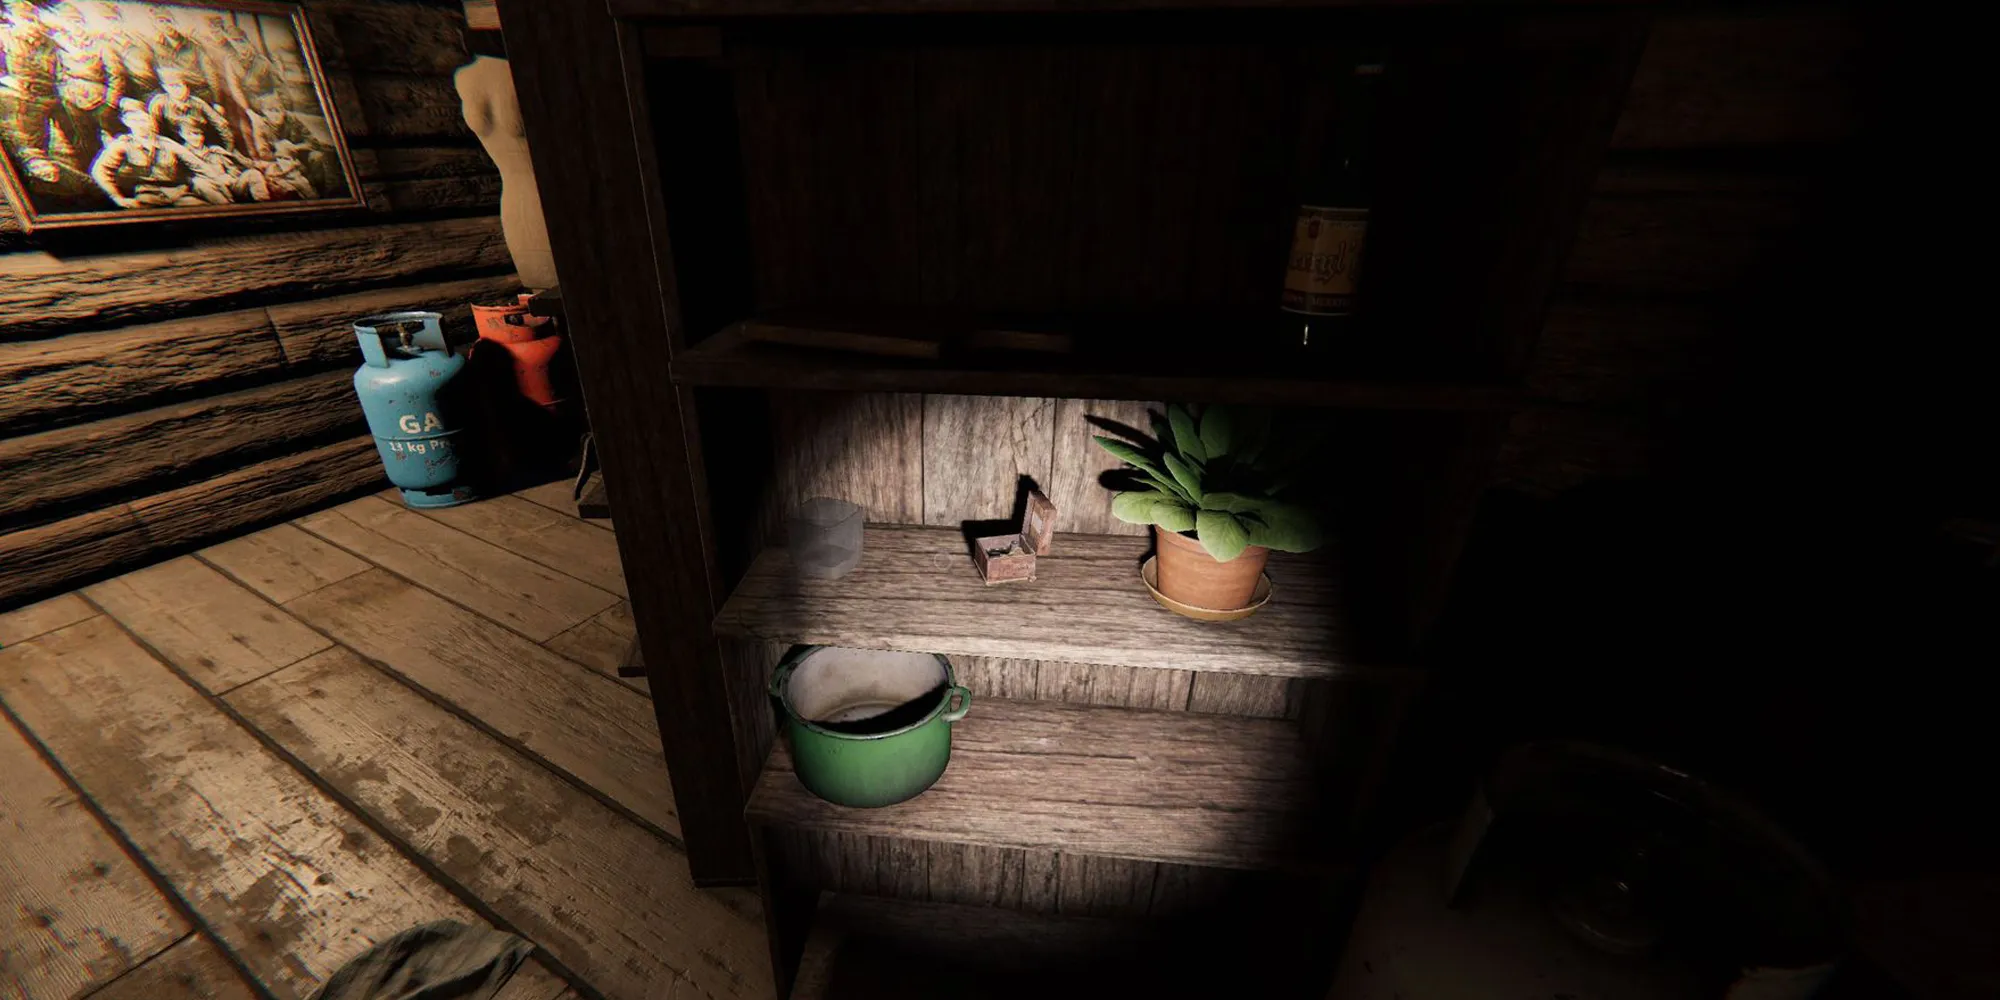 Изображение отображает музыкальную шкатулку на деревянной полке рядом с горшком с растением в фермерском доме Графтон в Phasmophobia.